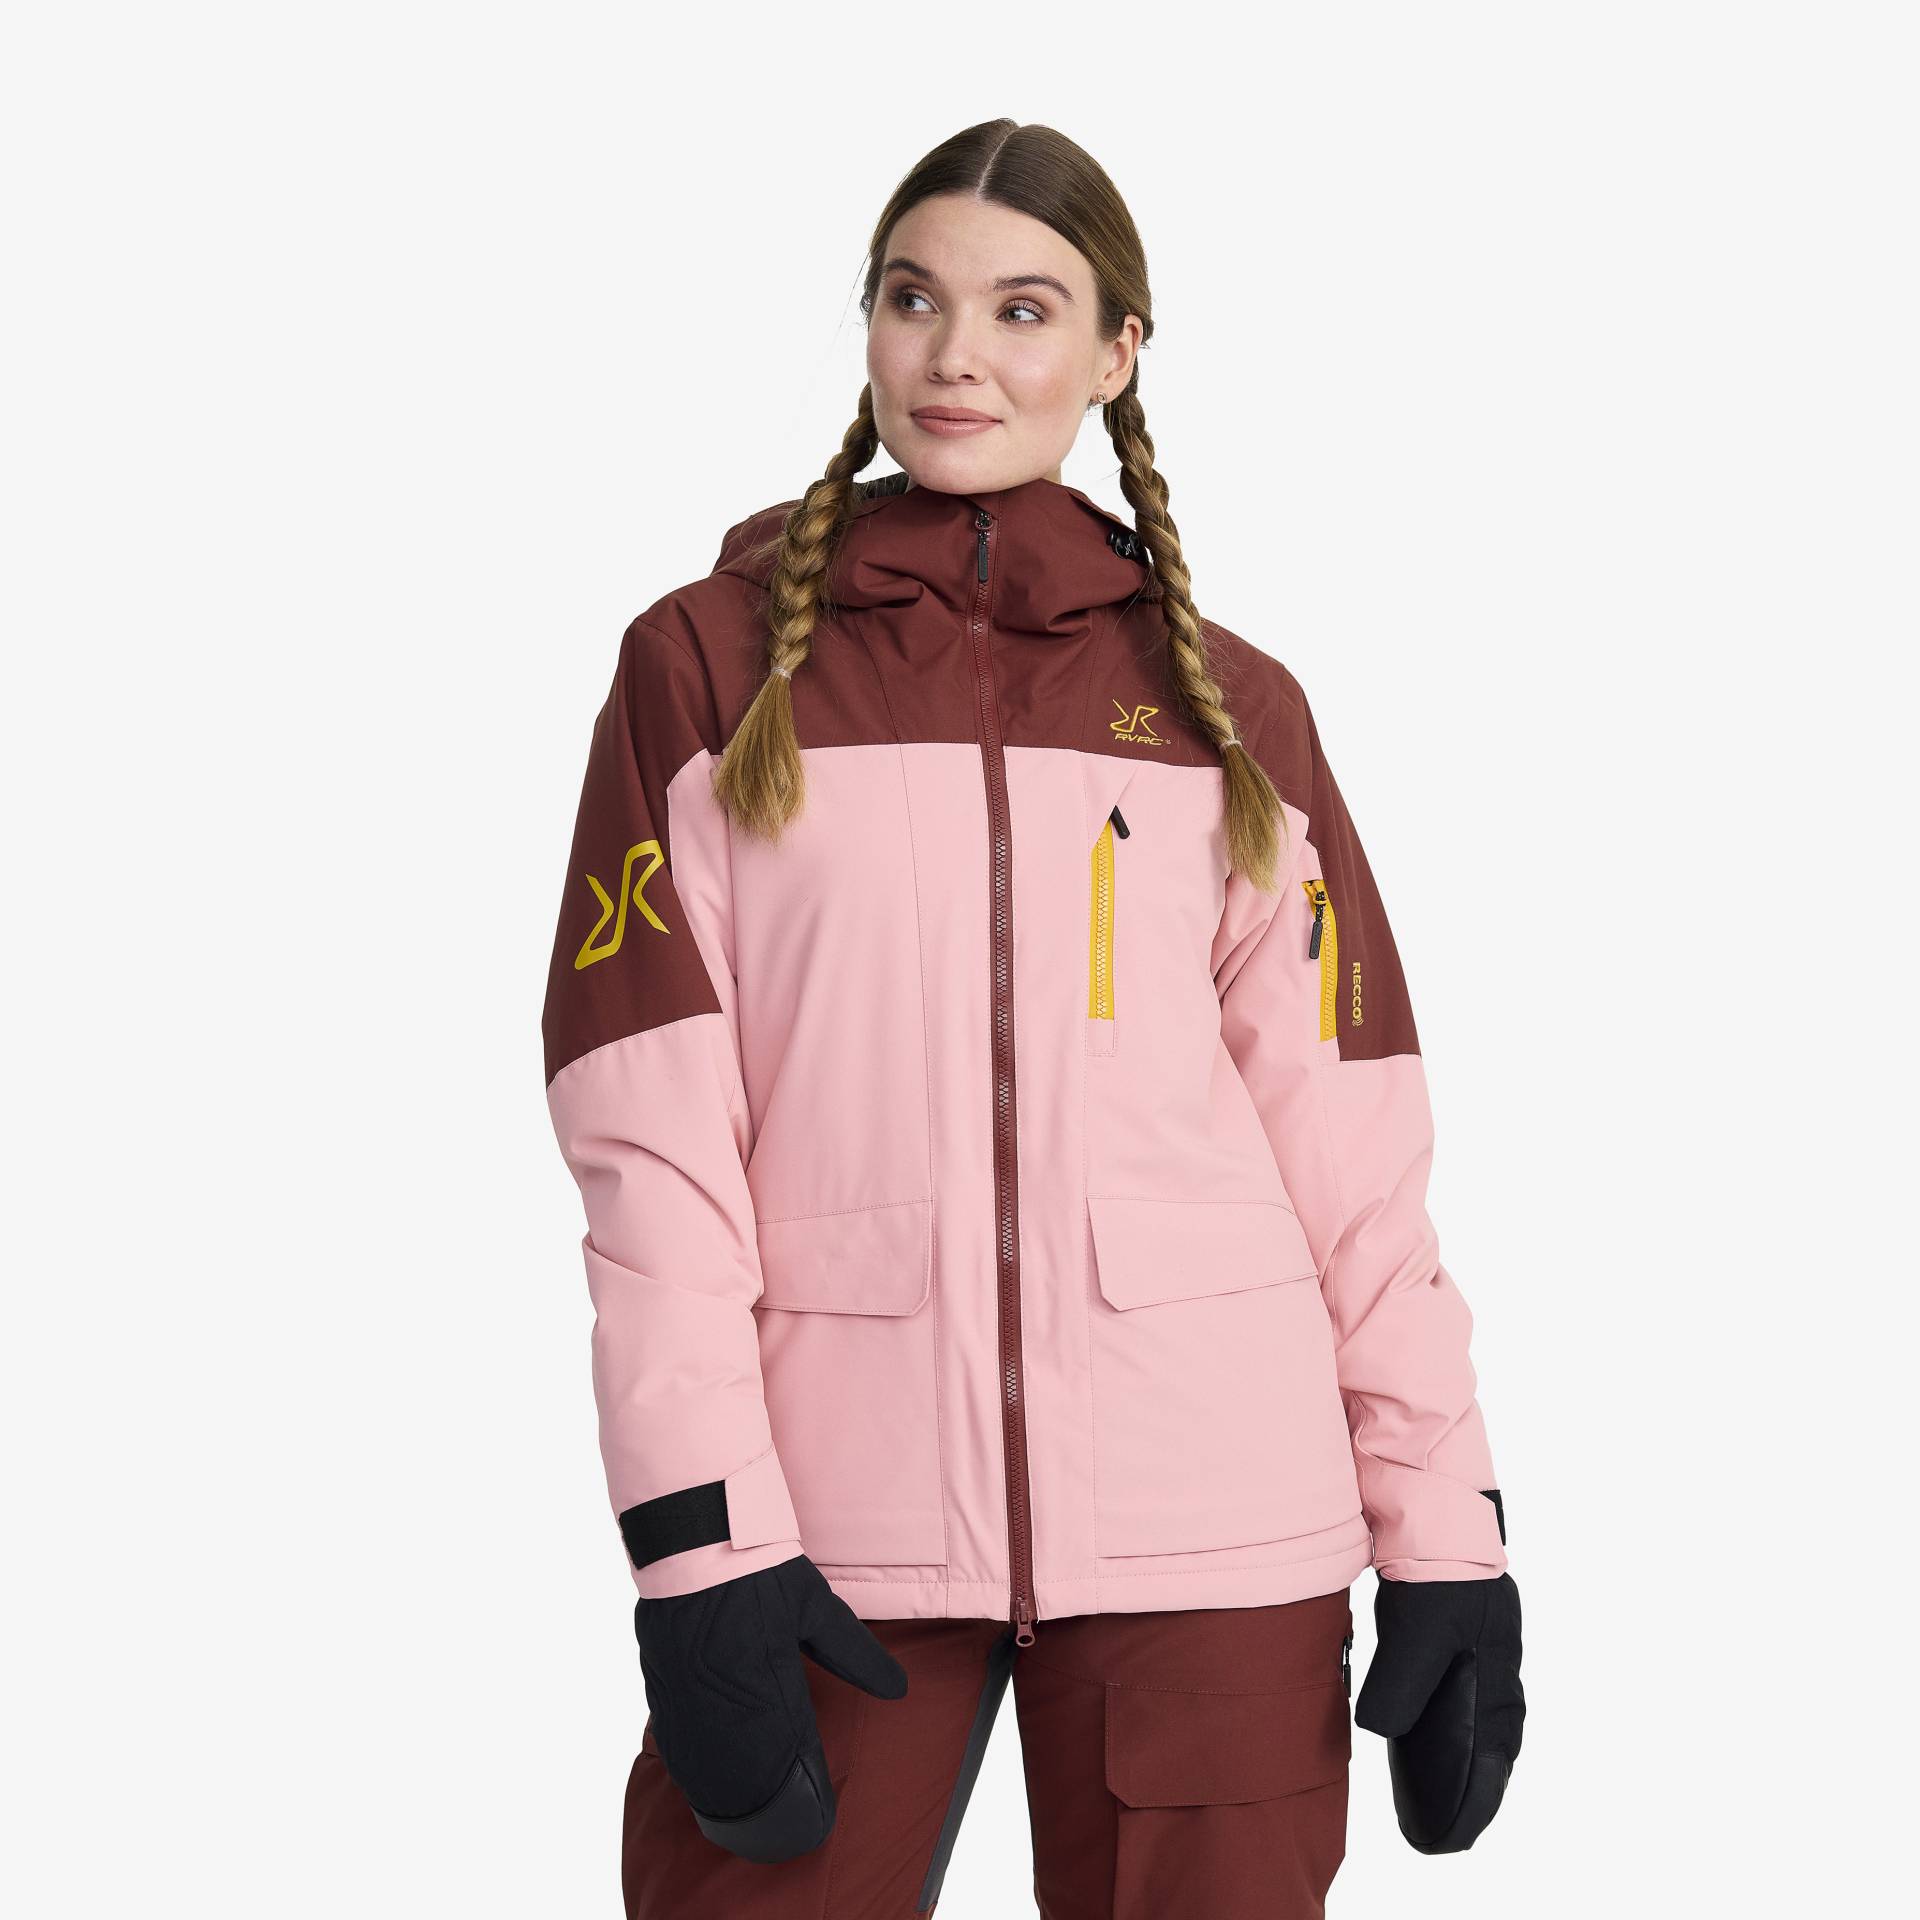 Halo 2L Insulated Ski Jacket Damen Blush, Größe:S - Skijacken von RevolutionRace